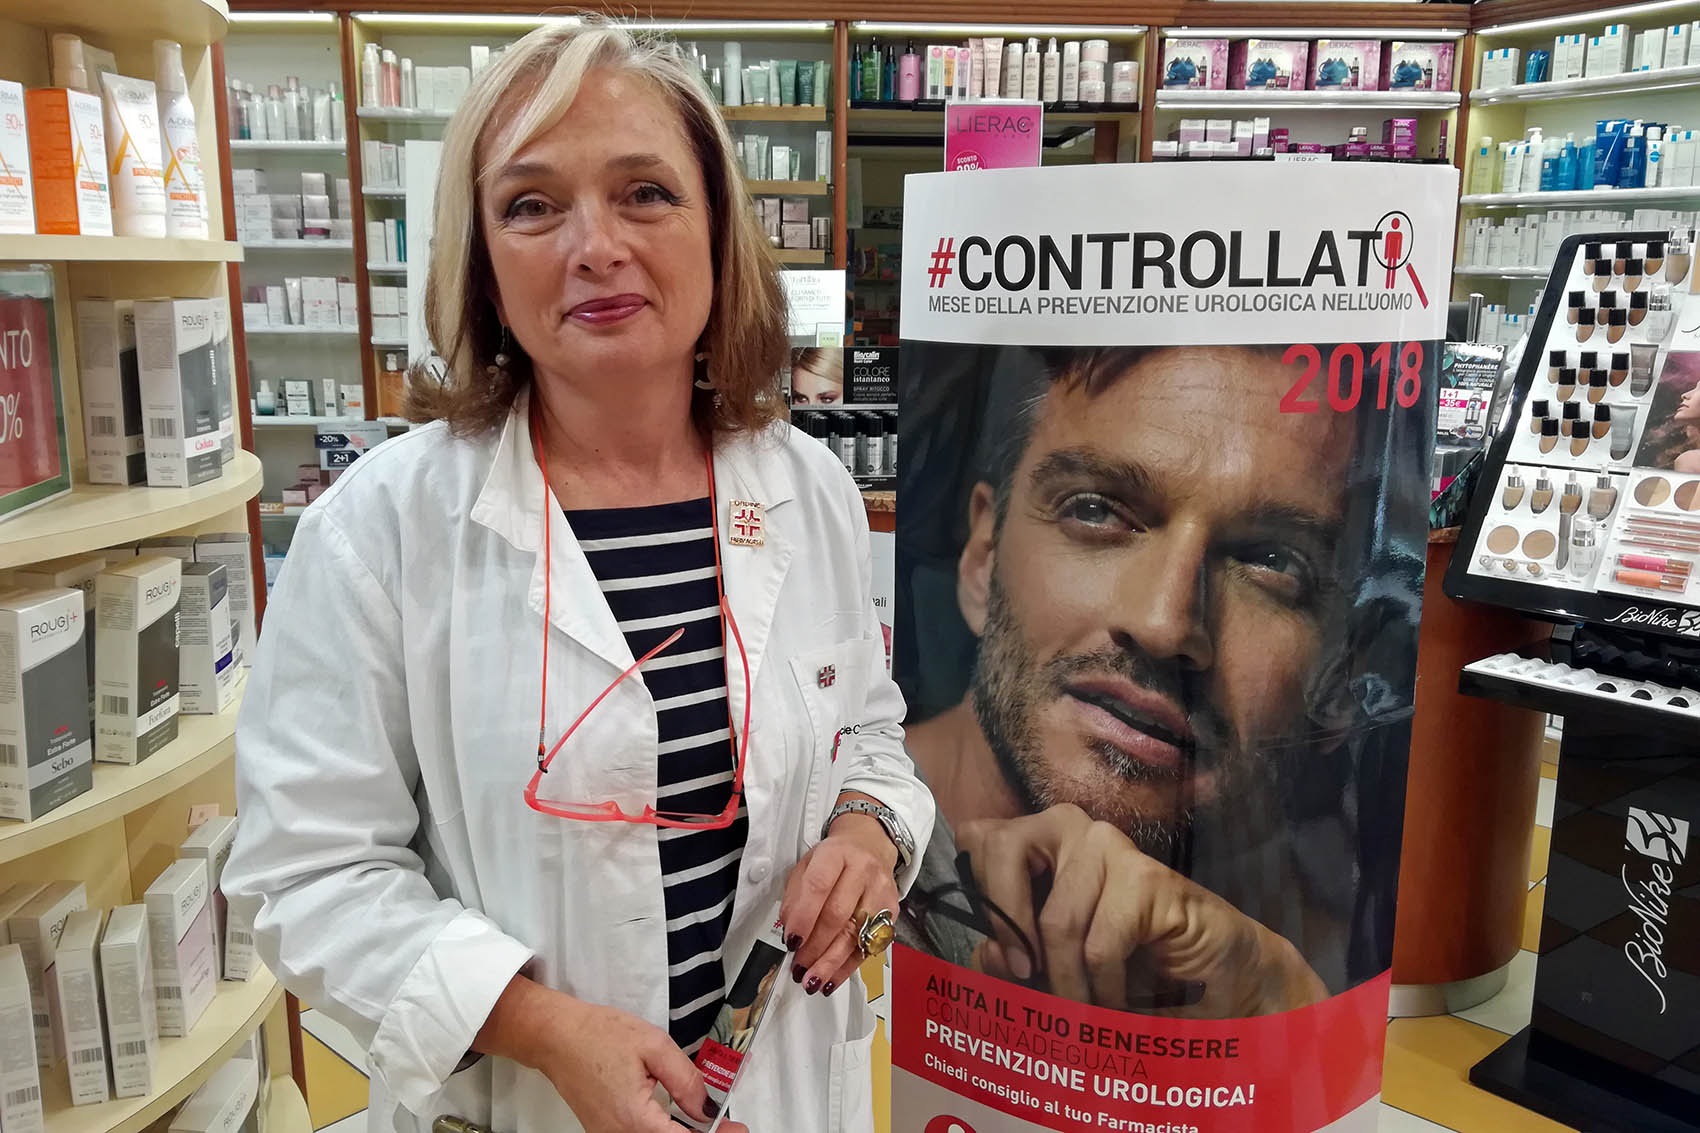 #Controllati, ad Arezzo visite gratuite per la prevenzione urologica